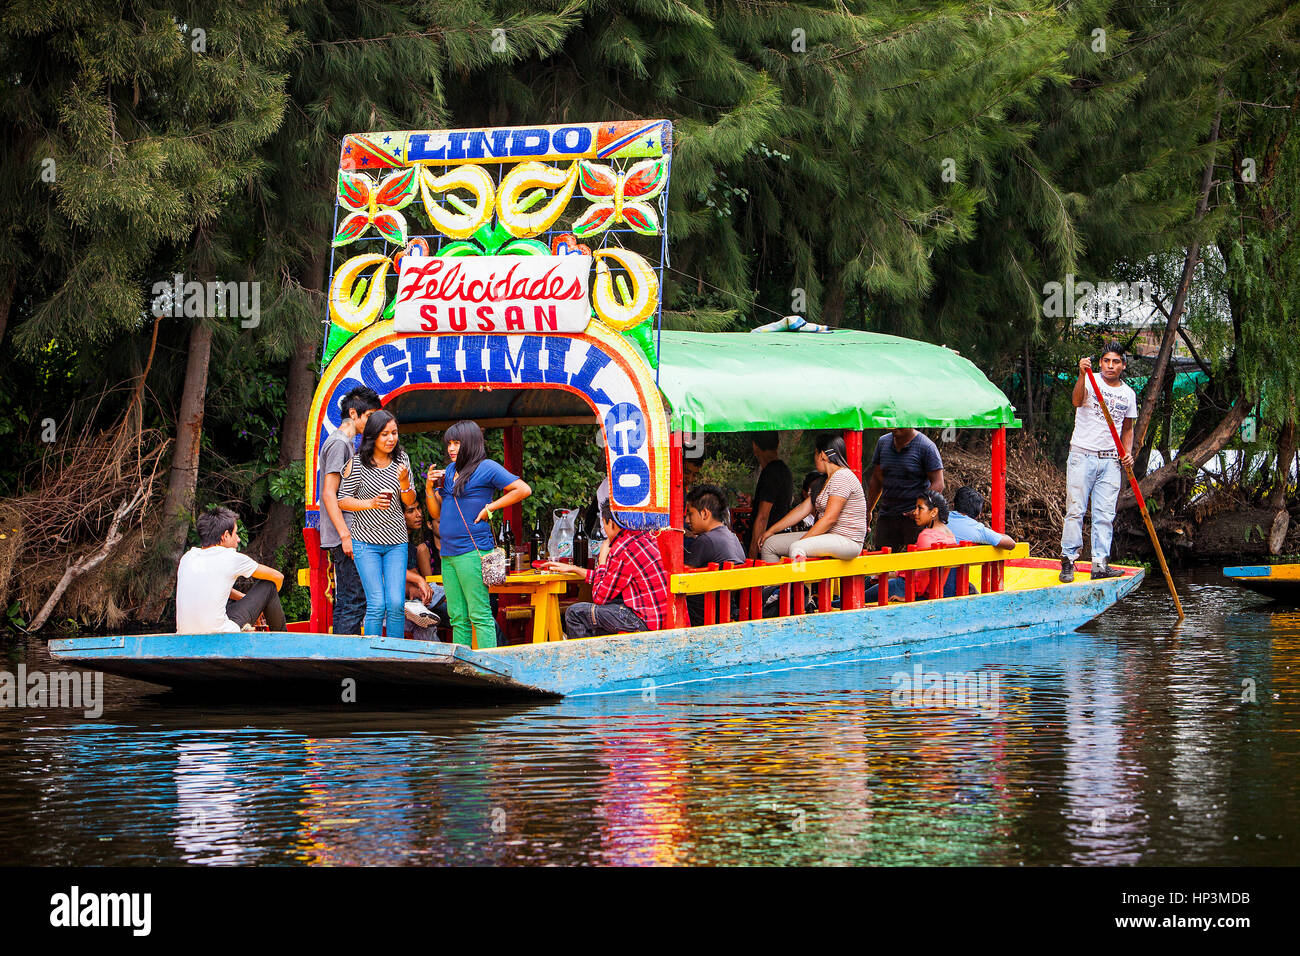 Trajineras on Canal, Xochimilco, Mexico City, Mexico Stock Photo